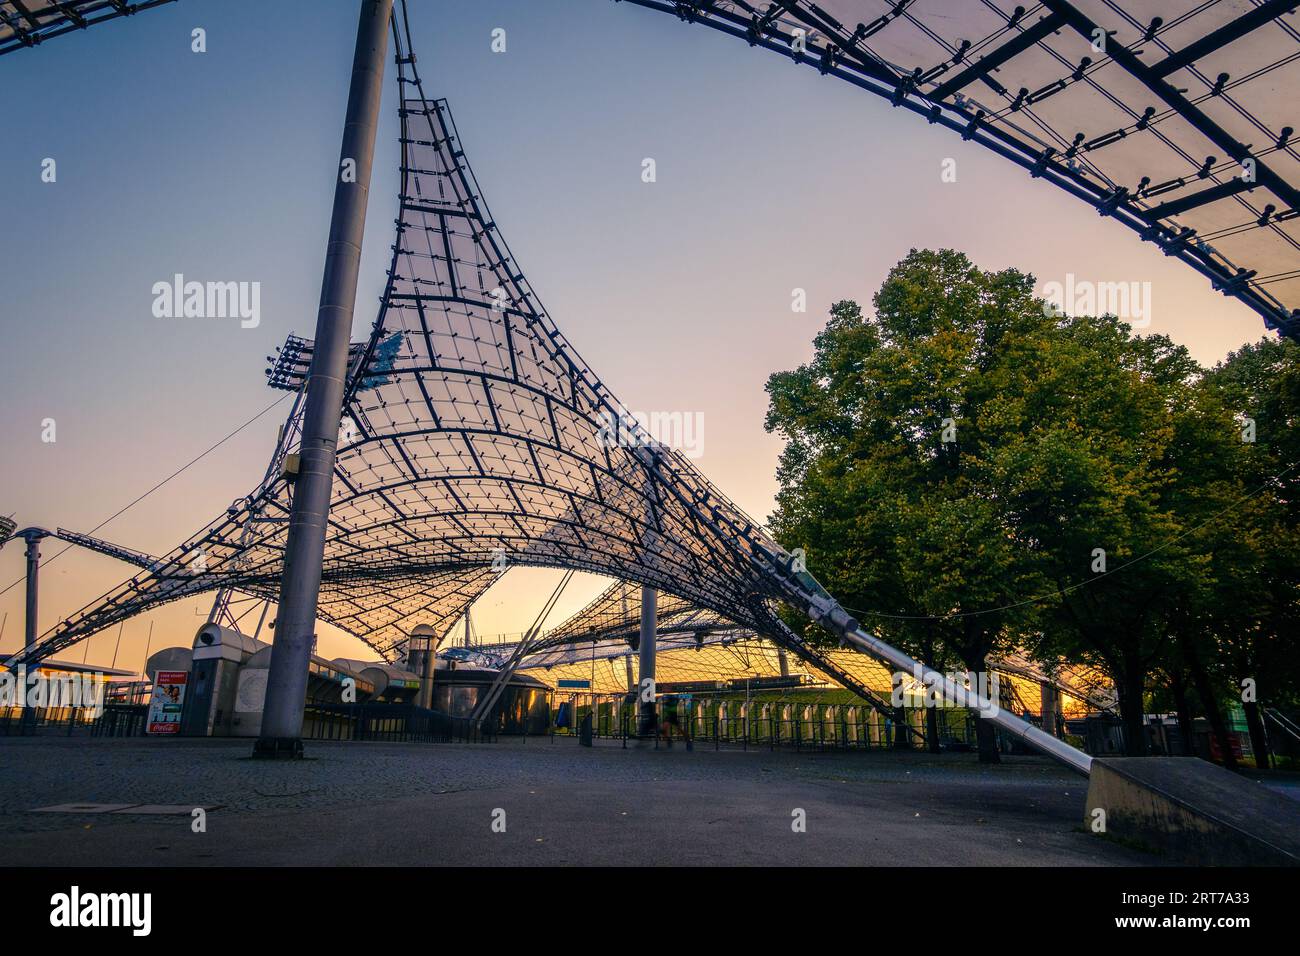 München, Deutschland, 29. September 2015: Olympiapark München - ein Sport- und Freizeitkomplex, der für die Olympischen Sommerspiele 1972 gebaut wurde. Stockfoto